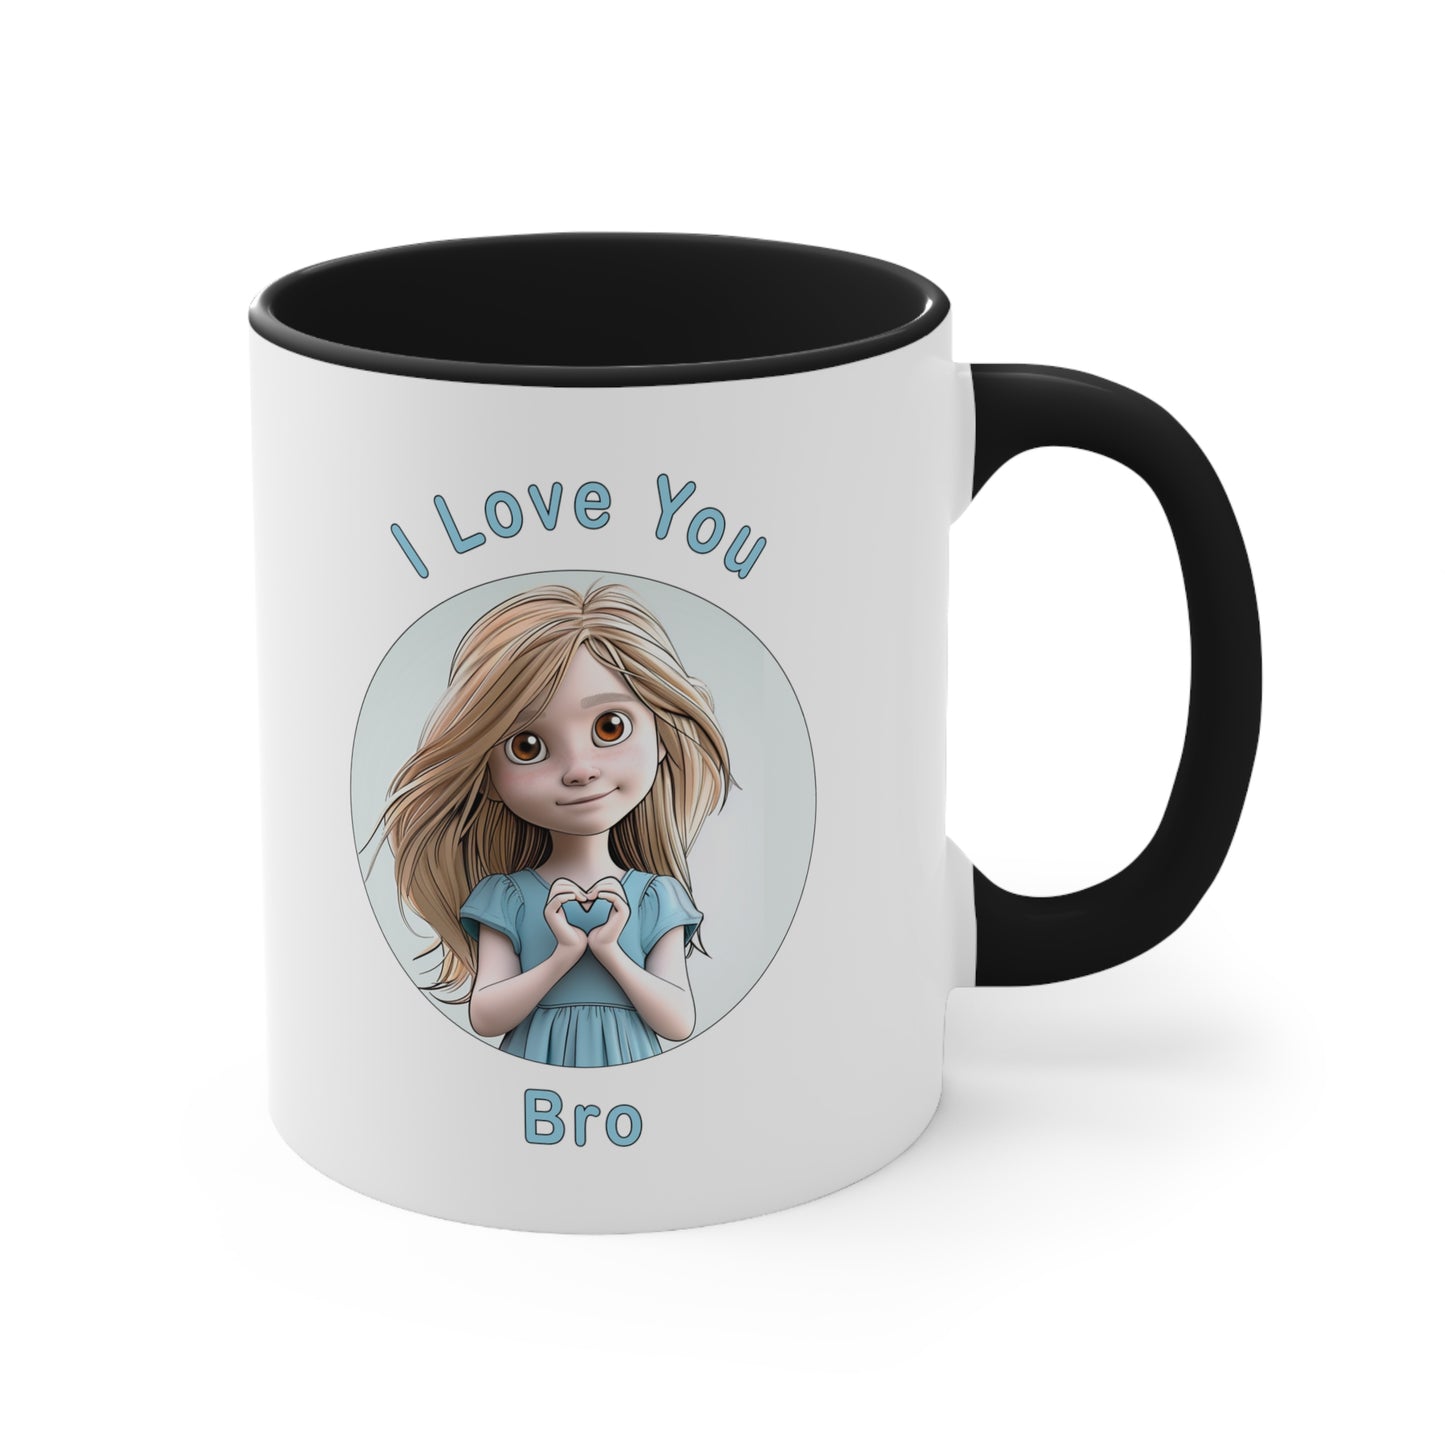 I love You Bro Coffee Mug, 11oz